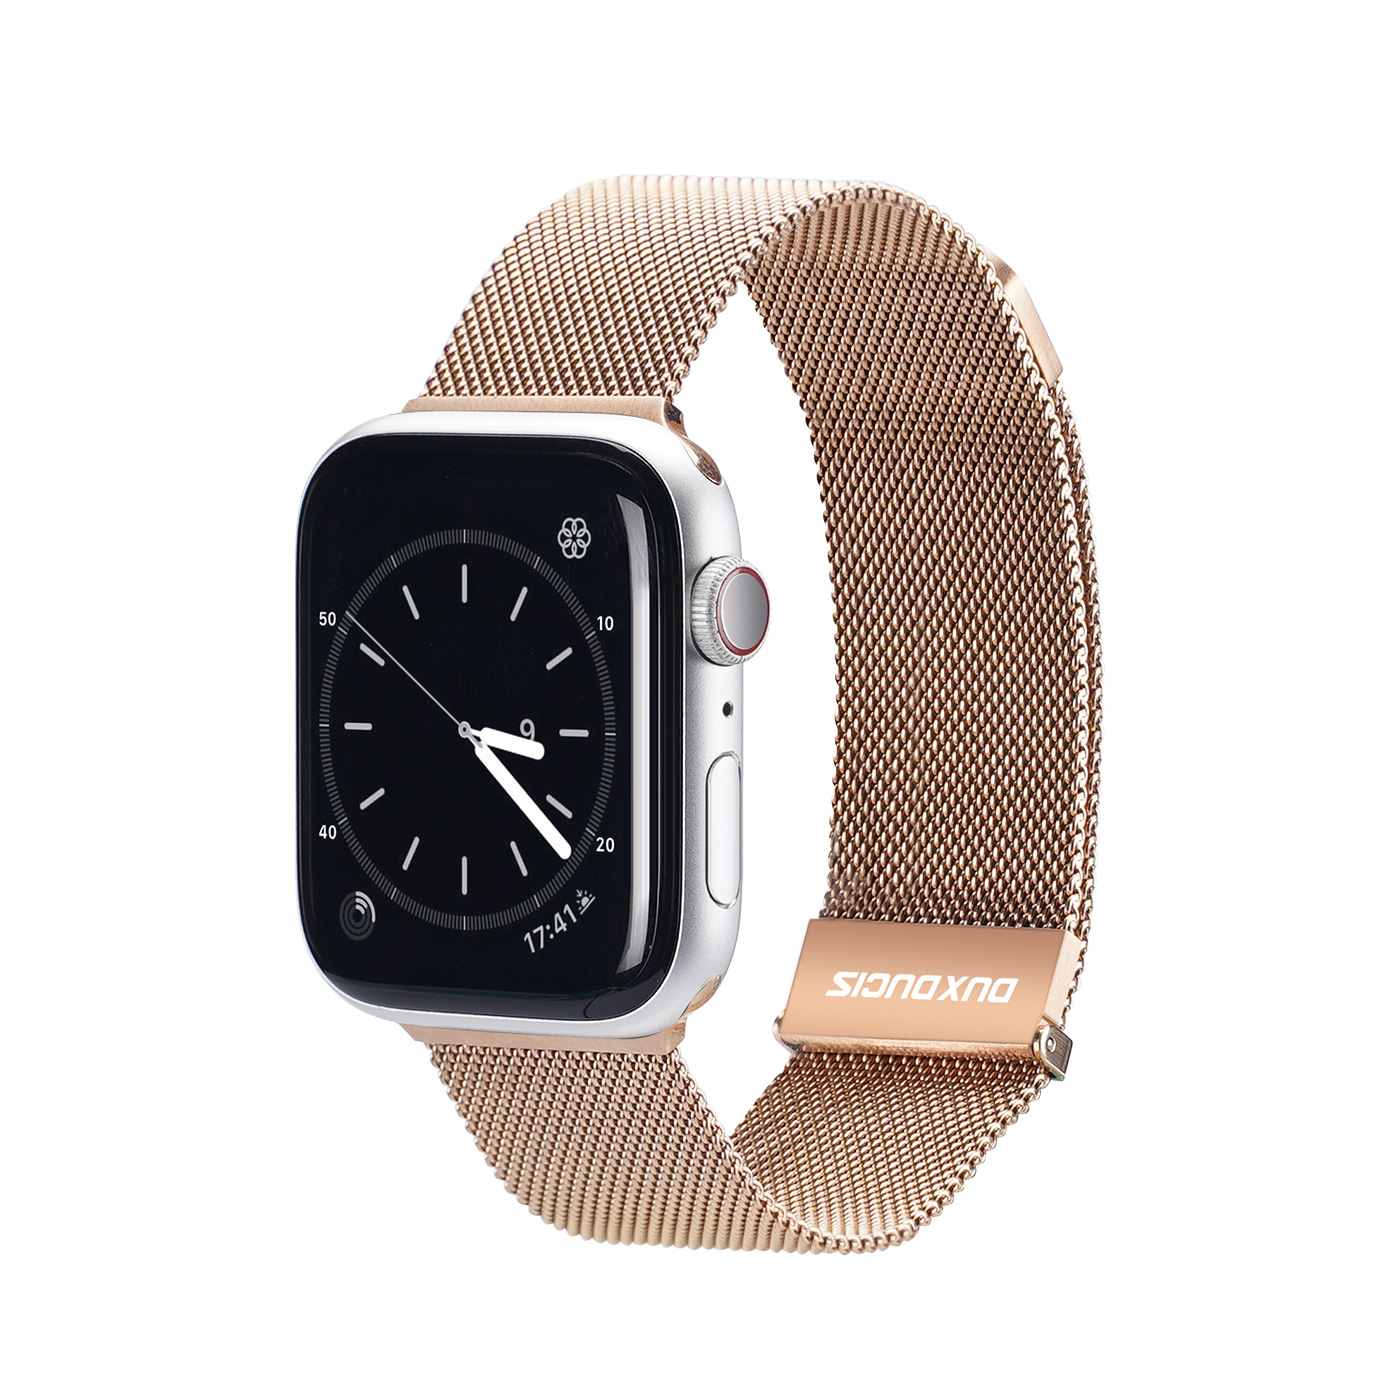 Zdjęcia - Pasek do smartwatcha / smartbanda Dux Ducis Milanese - pasek magnetyczny ze stali nierdzewnej do Apple Watch 